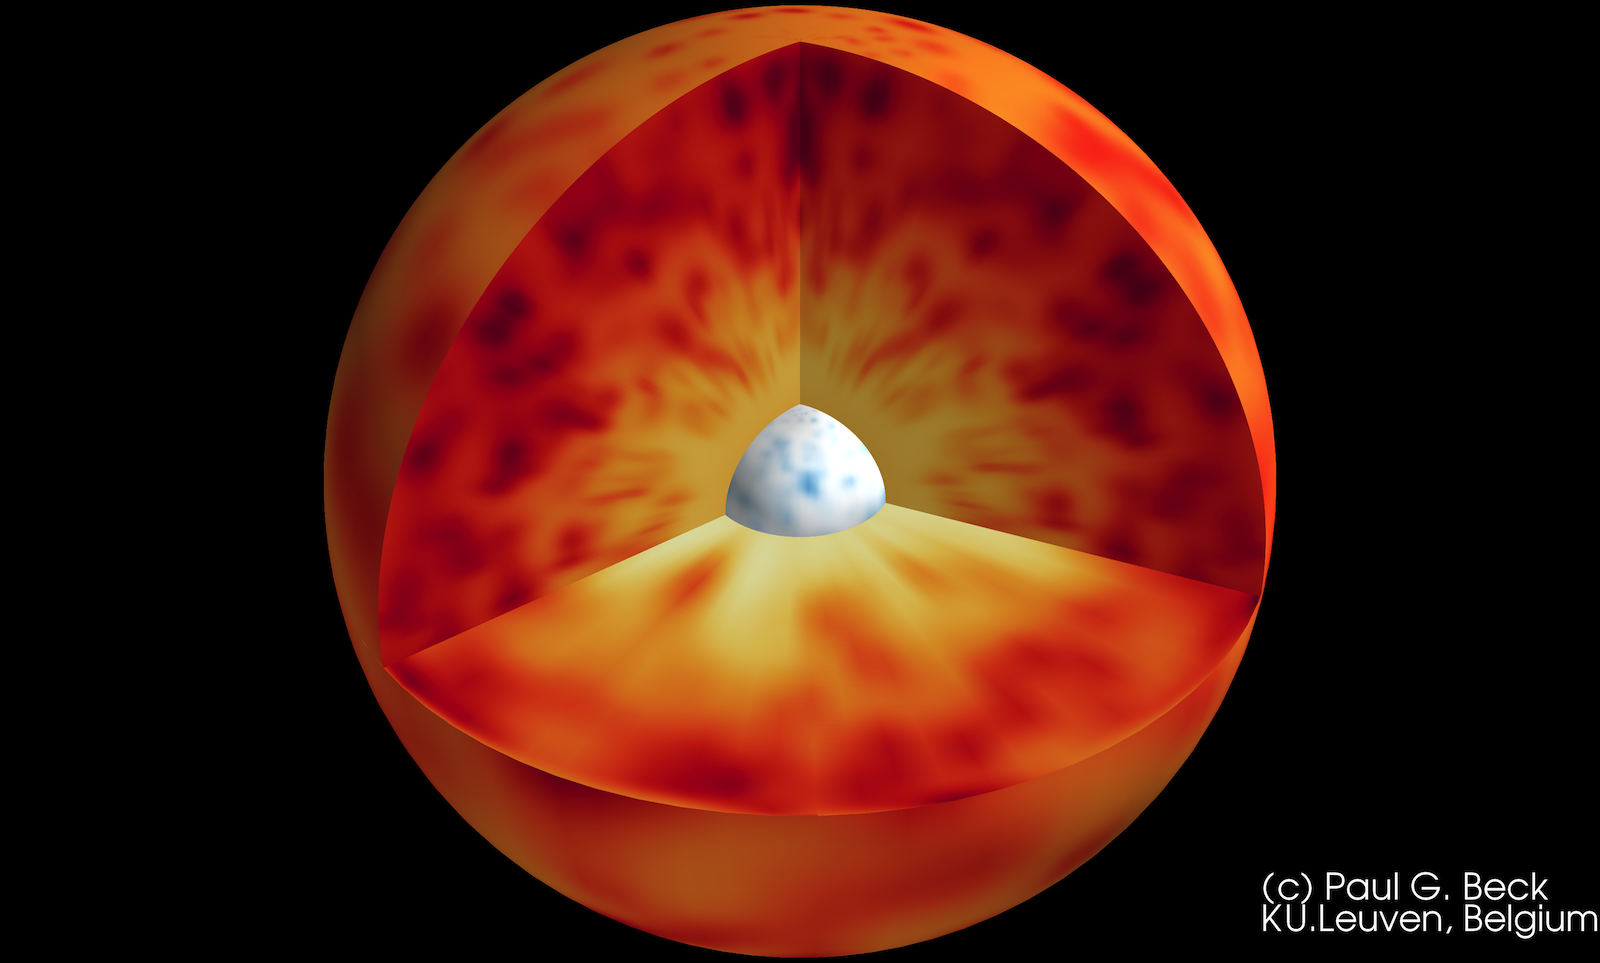 De hete kern van een rode reus roteert tien keer sneller dan het oppervlak Credit: Paul G. Beck, KU Leuven, België